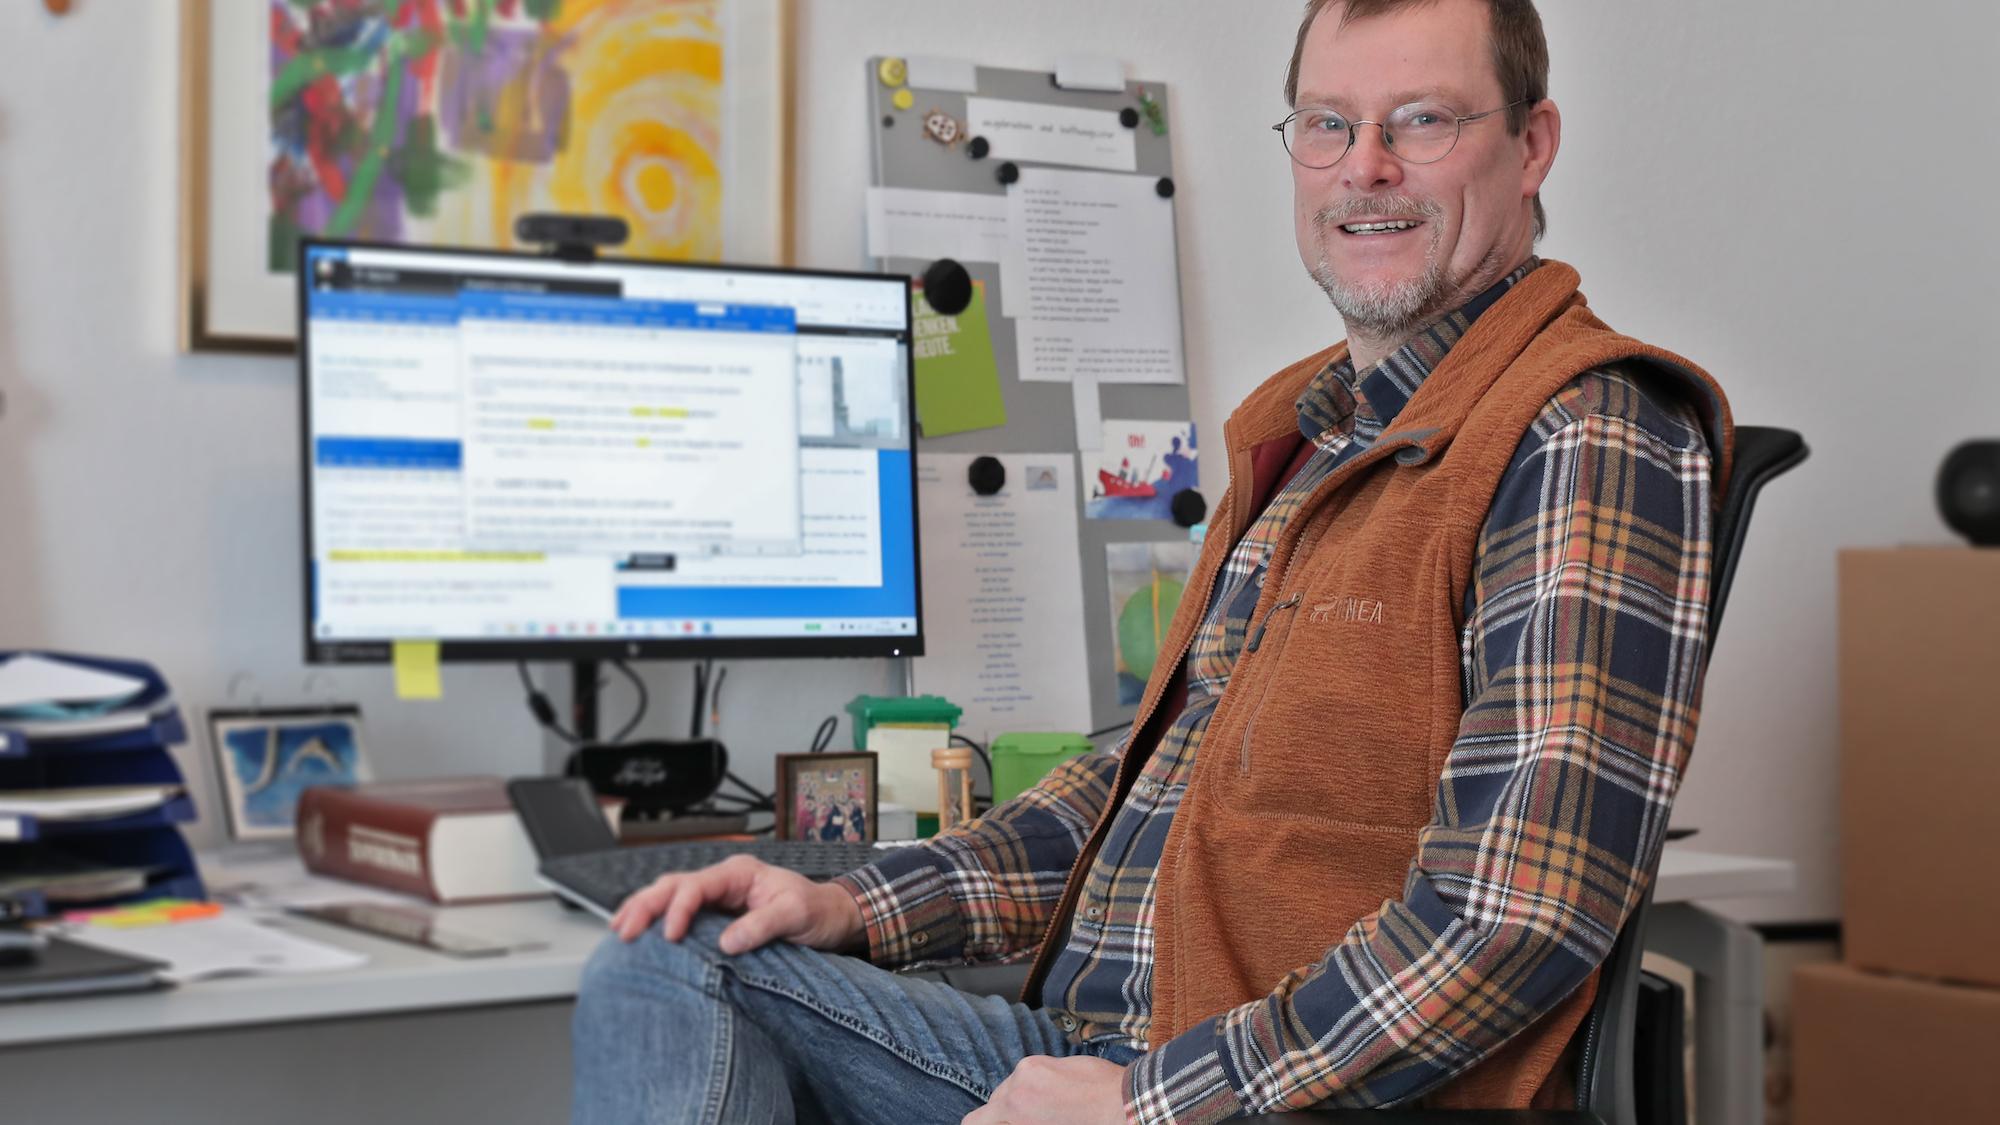 Gemeindereferent Thomas Guntermann setzt sich als Betriebsseelsorger für Menschen ohne Arbeit ein. (c) Dirk Jochmann